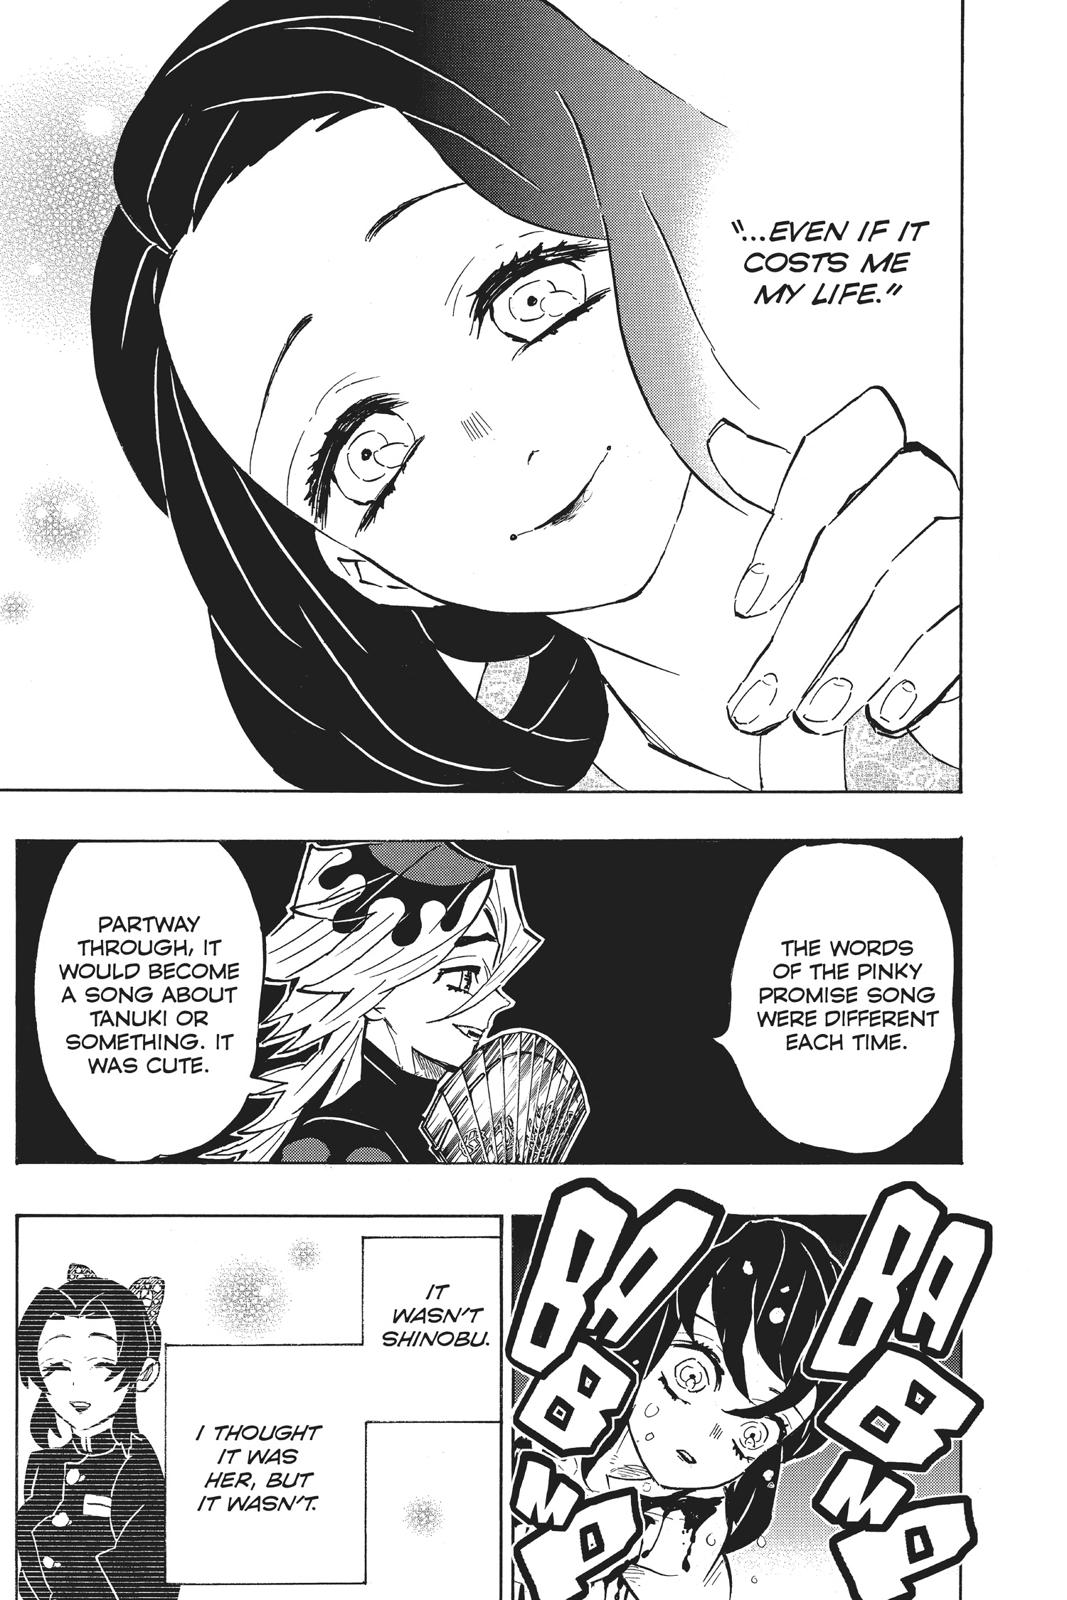 Demon Slayer Manga Manga Chapter - 160 - image 10